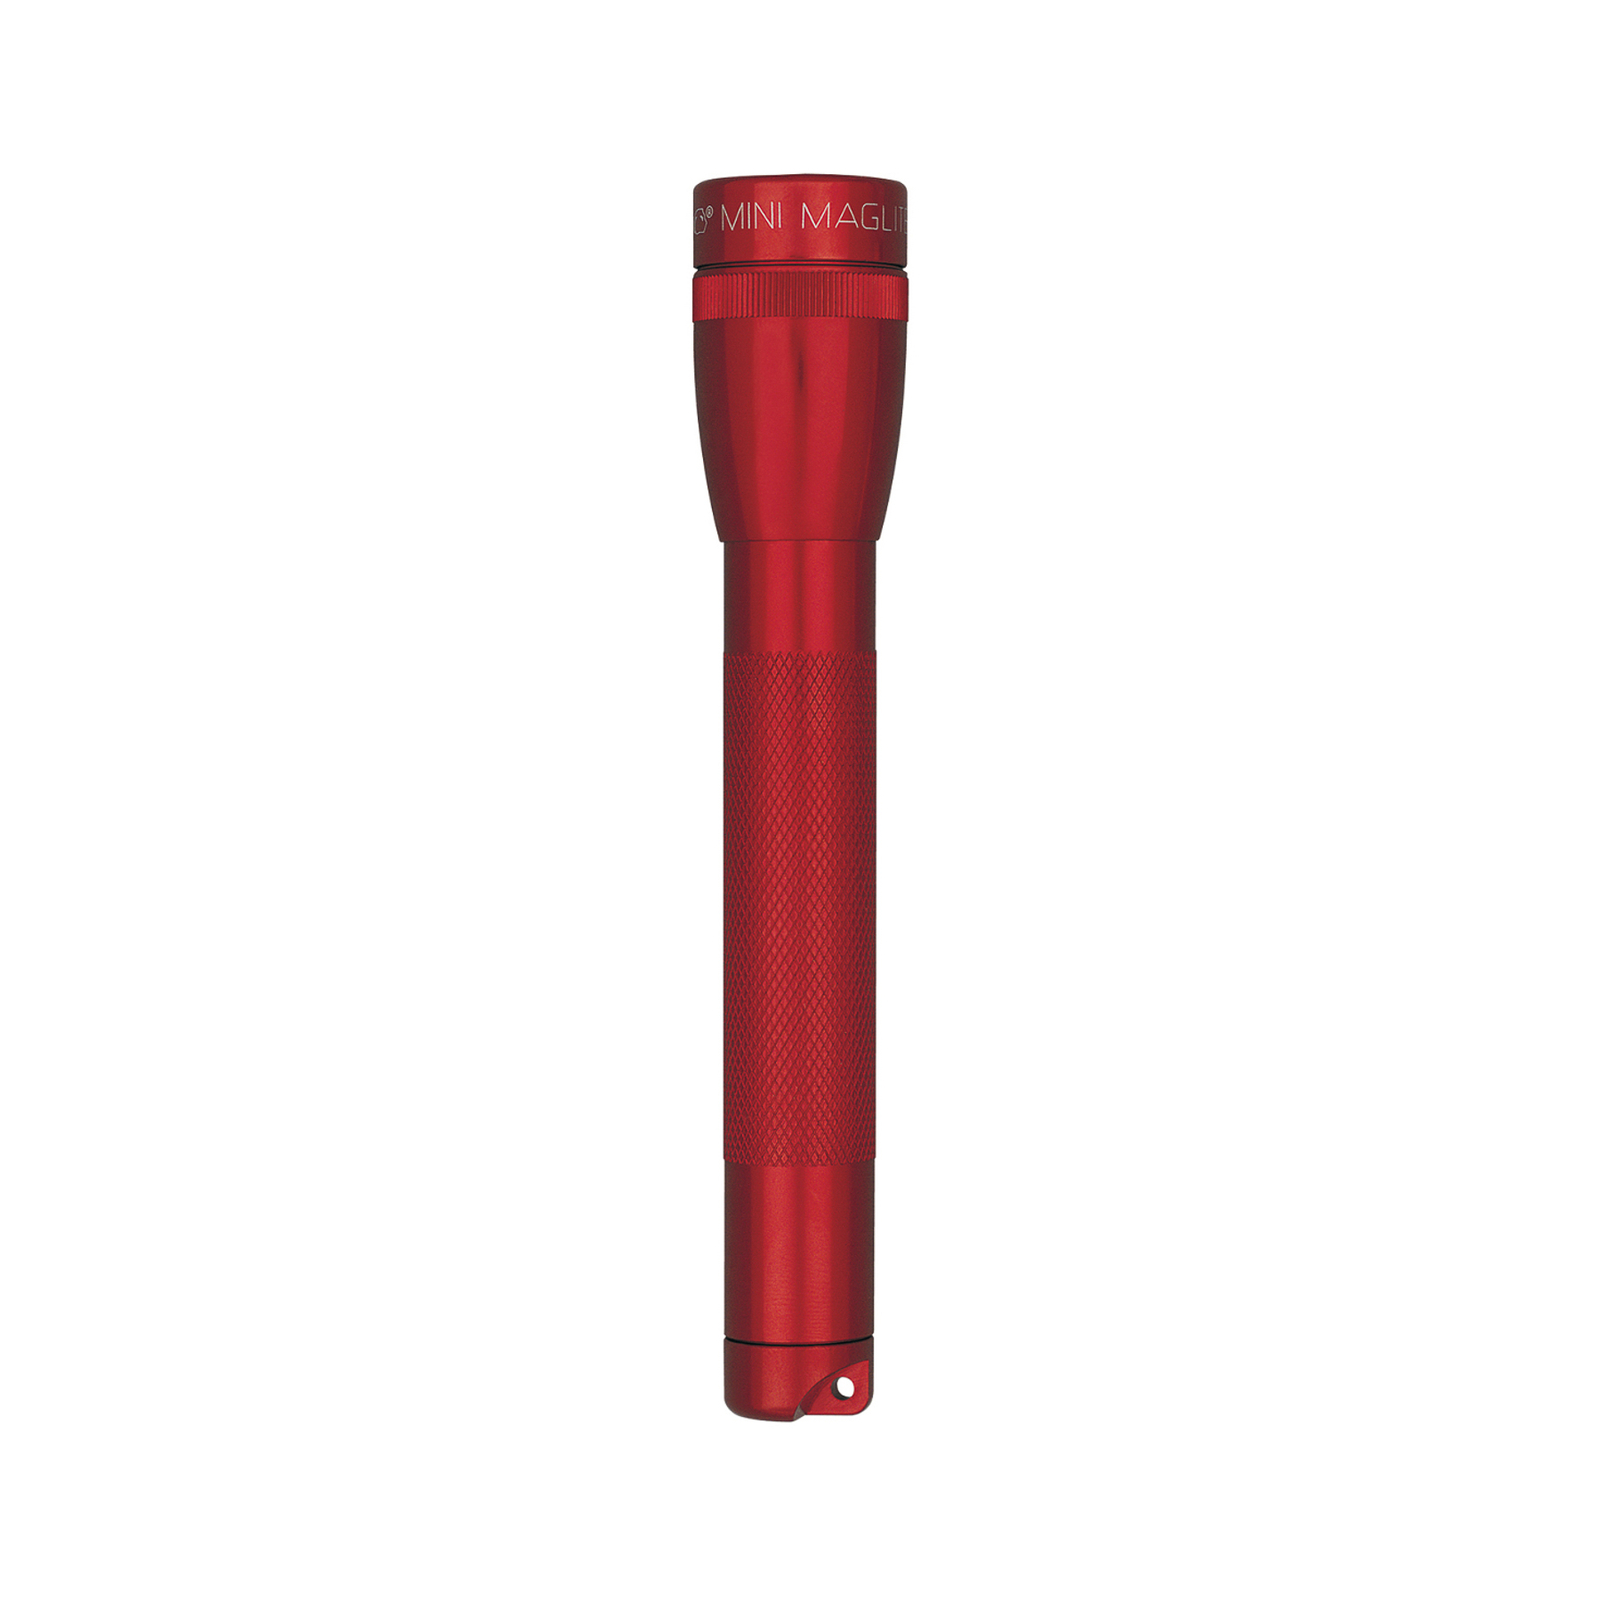 Mini torcia Maglite Xenon, 2 Cell AA, con Box, rosso